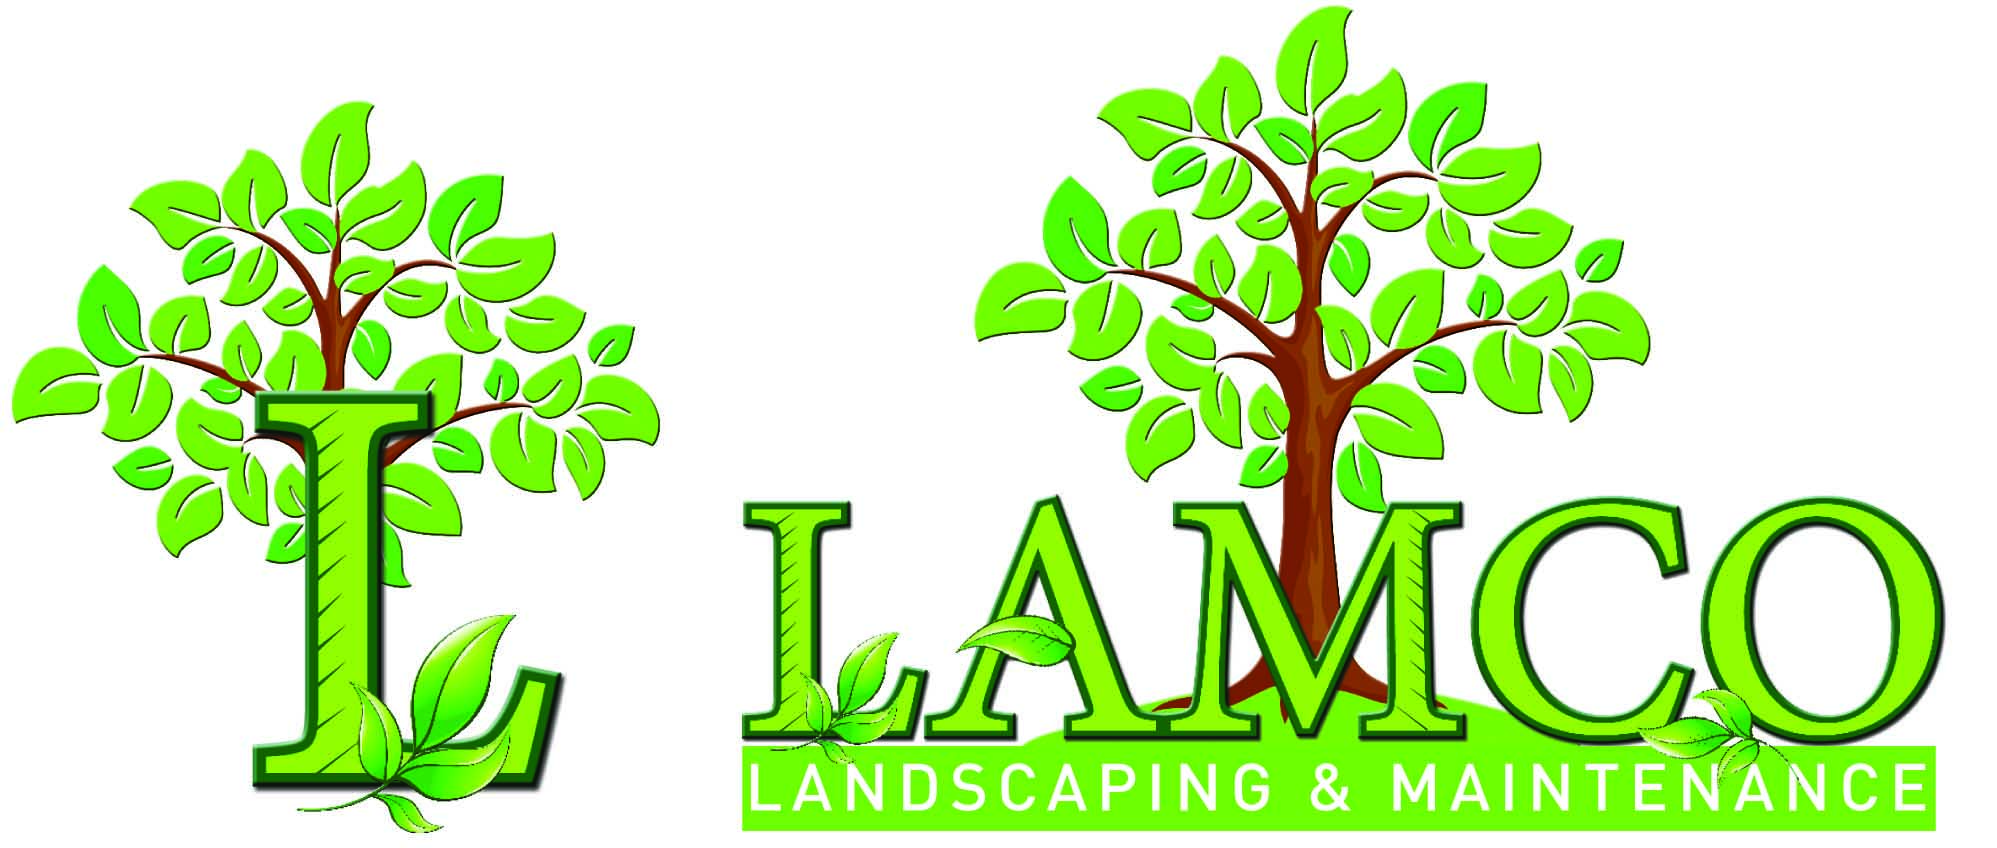 Landscaping Logos